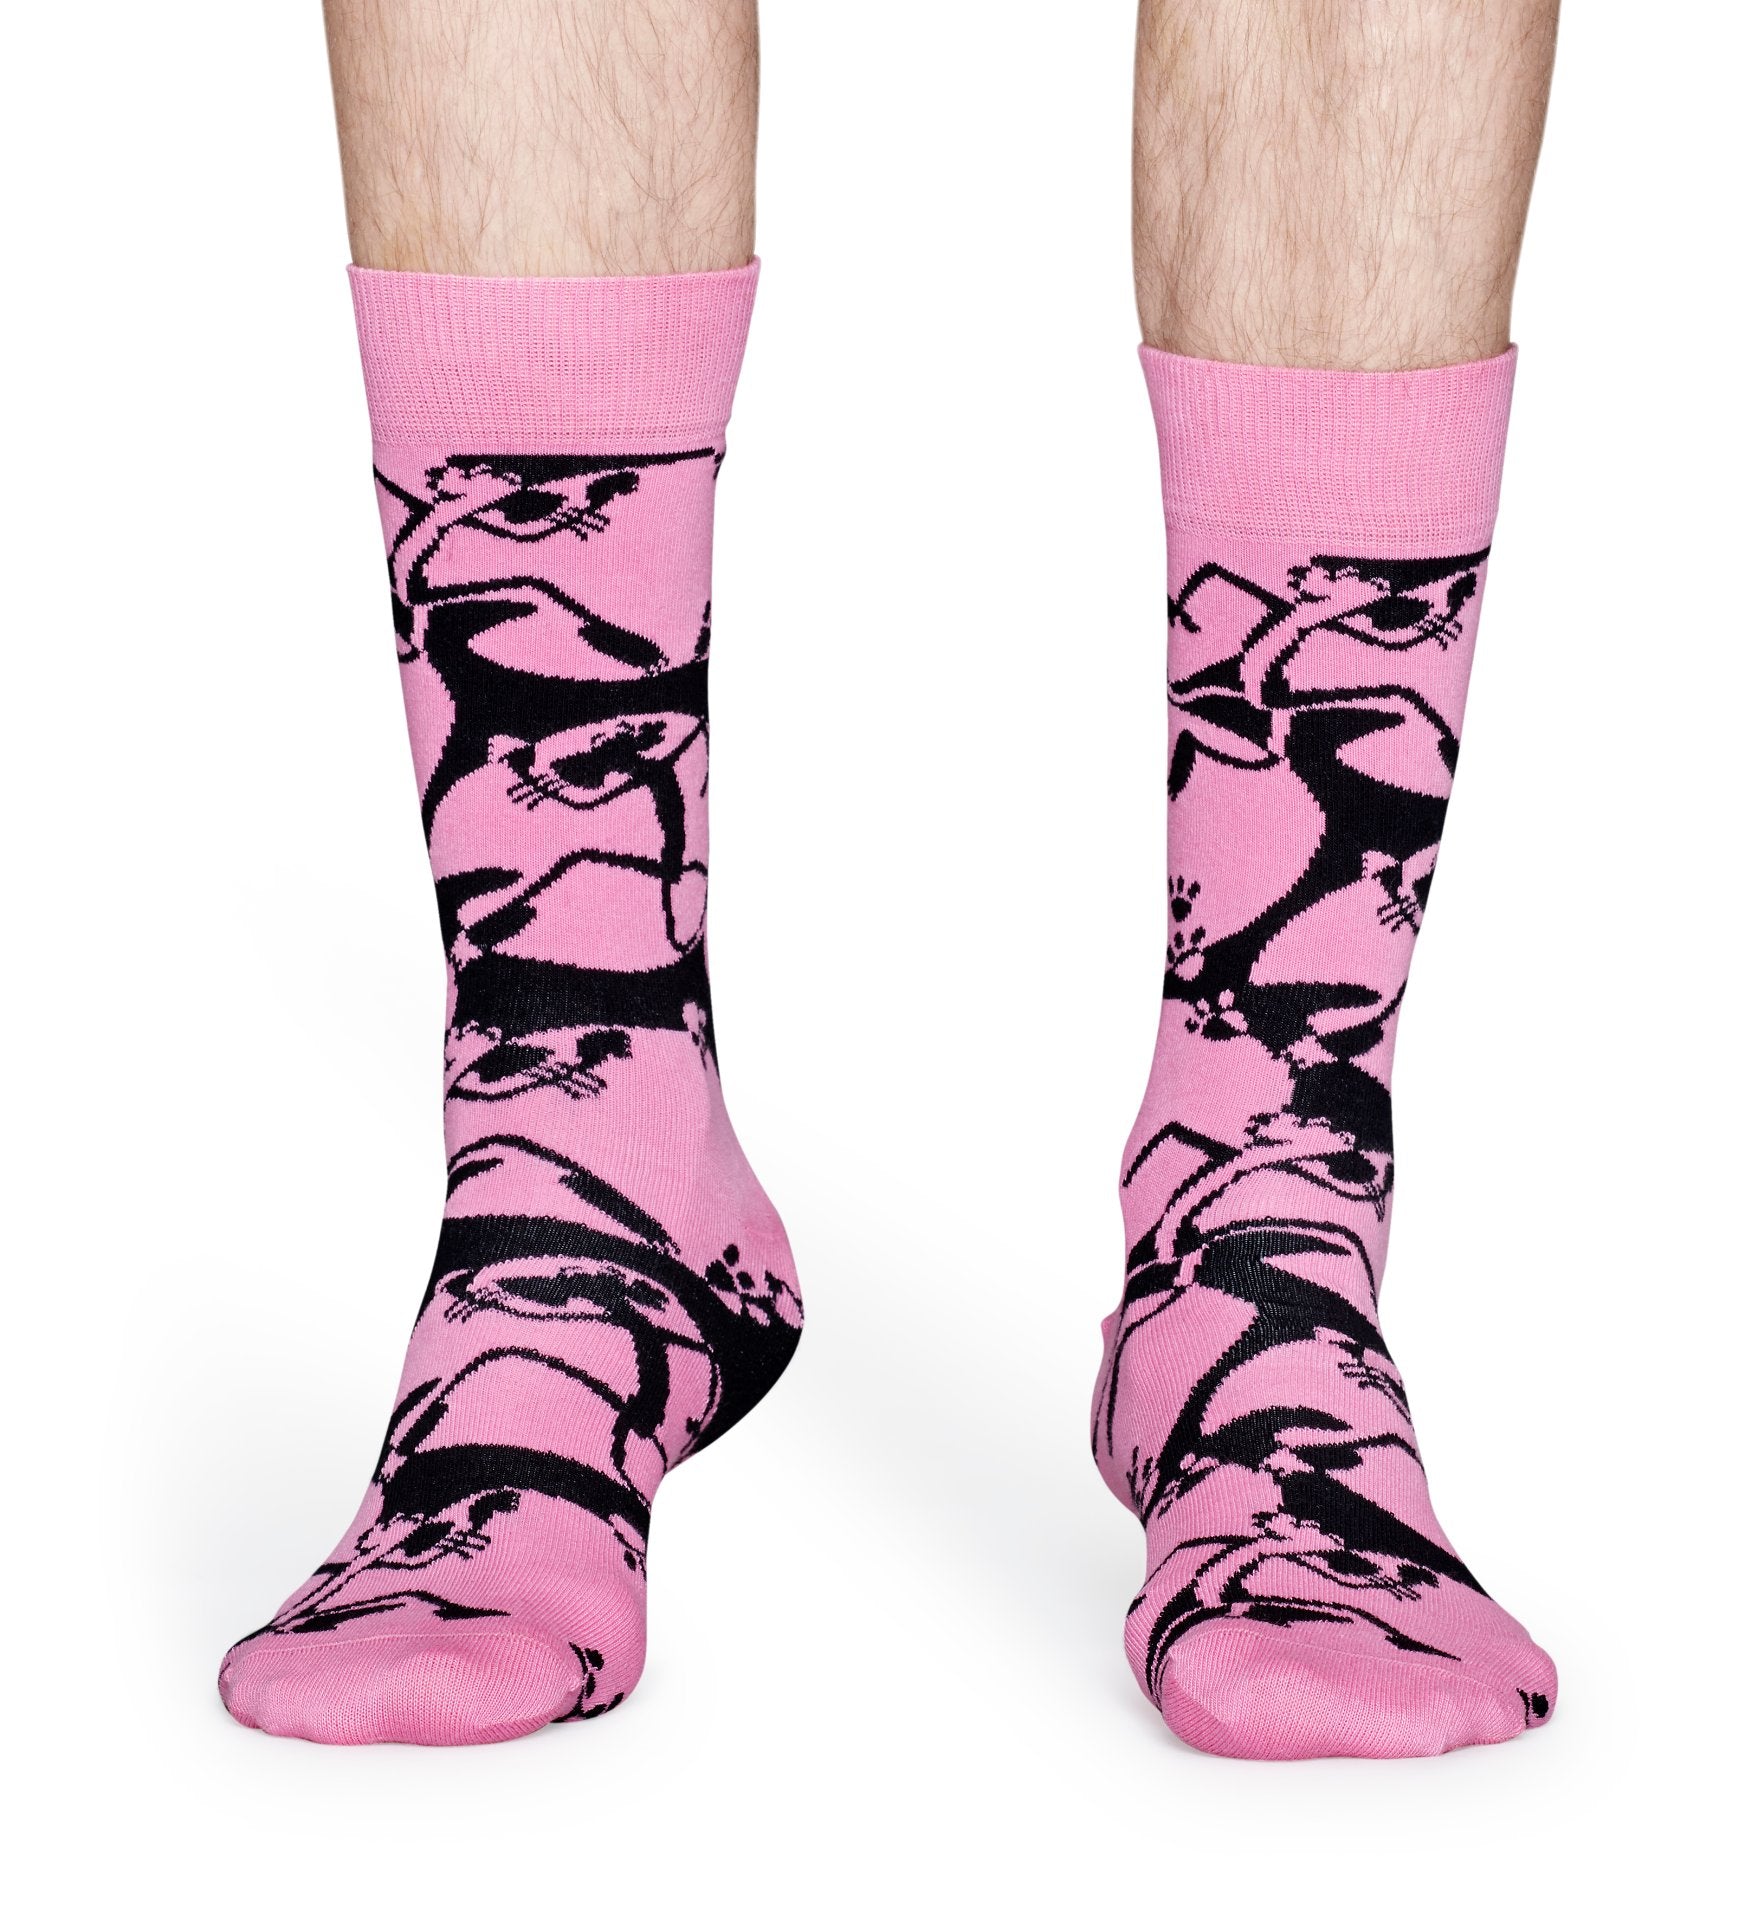 Růžovo-černé ponožky z kolekce Happy Socks x Pink Panther, vzor Pink-A-Boo